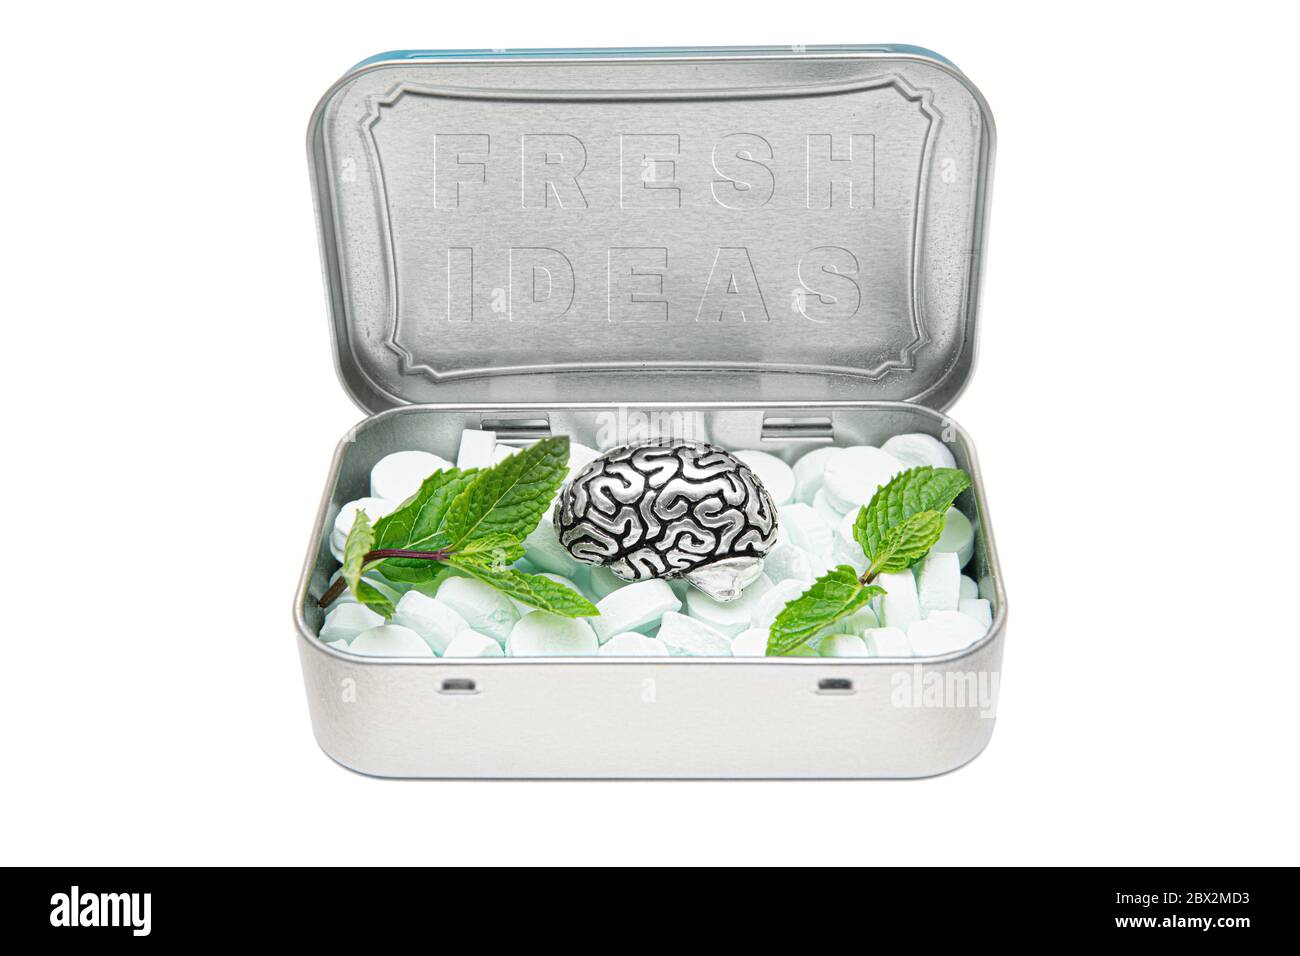 Scatola di stagno piena di conchioni di alito, una copia di acciaio del cervello umano e foglie di menta verde, che rappresenta un ricco serbatoio di idee fresche. Concetto creativo di kee Foto Stock